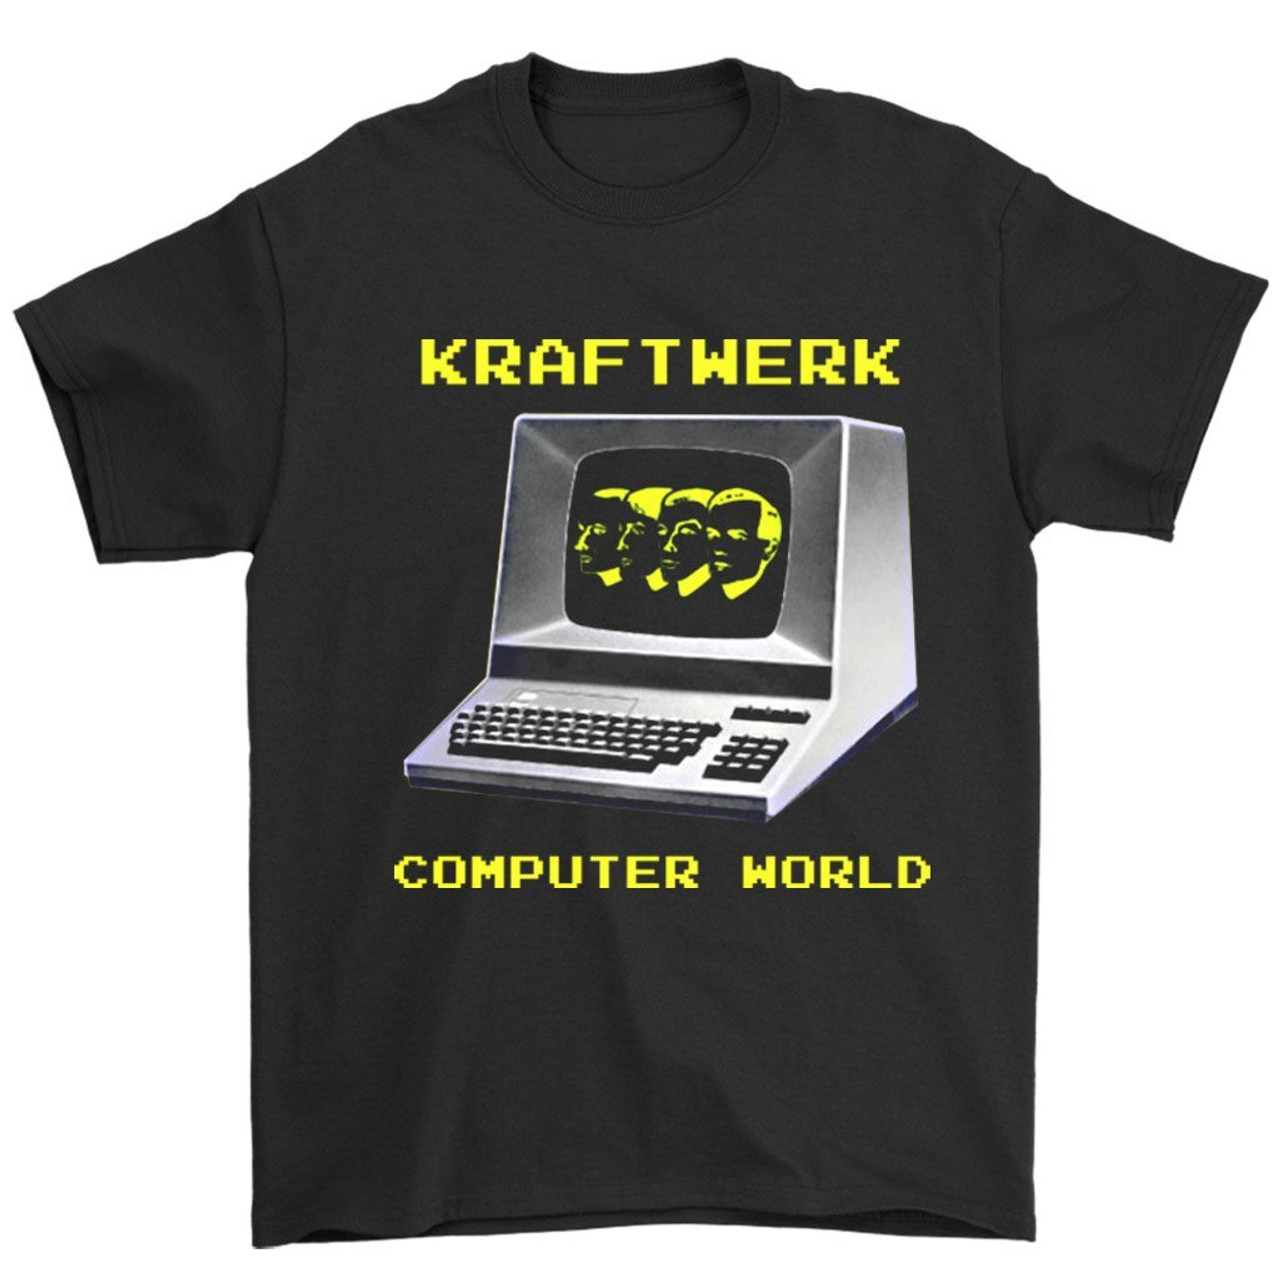 Kraftwerk Computer World Man's T-Shirt Tee